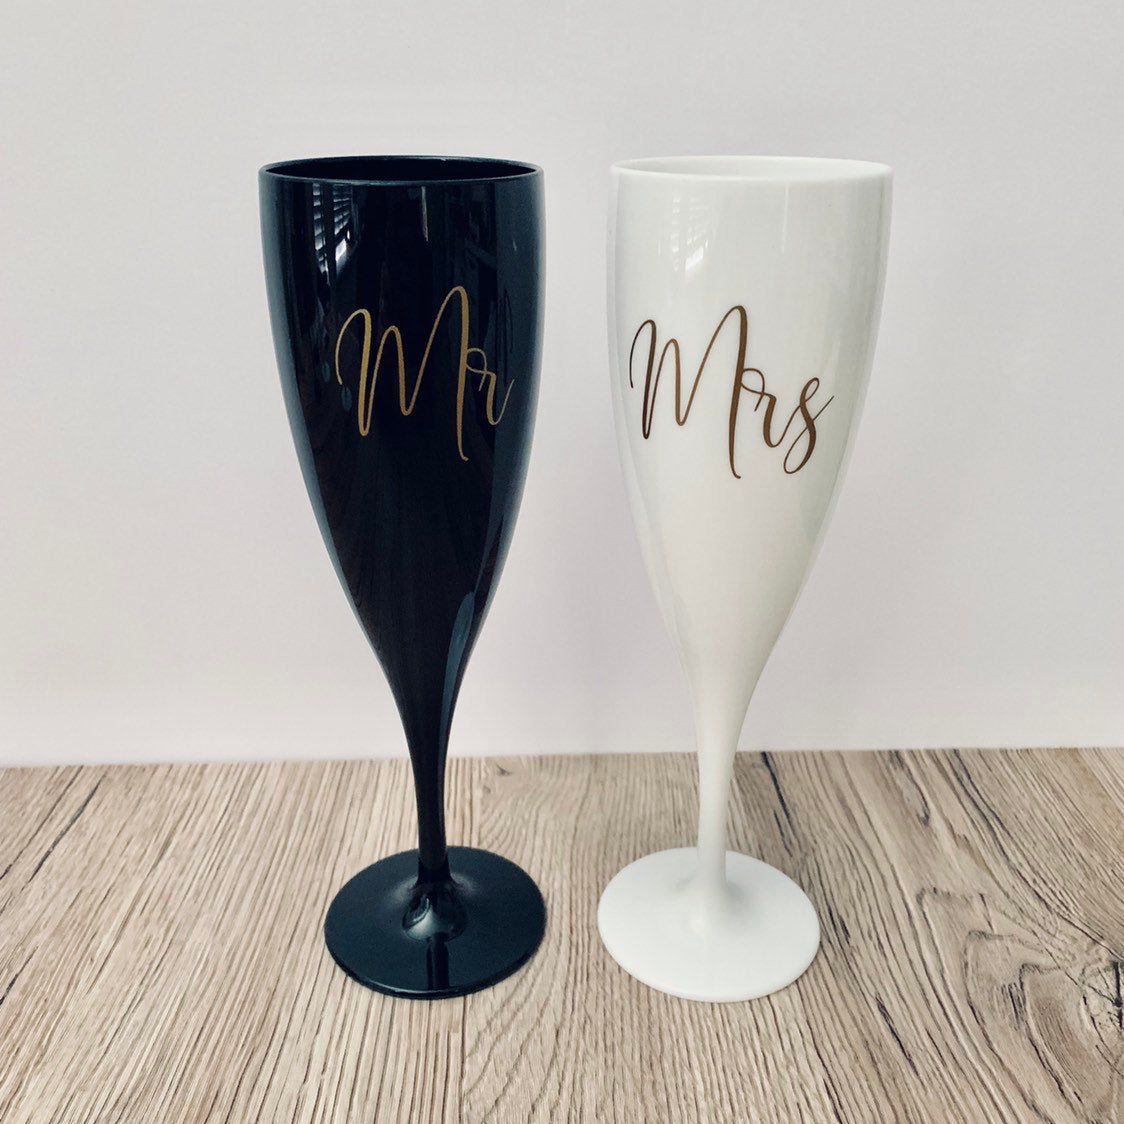 Mr &  Mrs champagne flutes black and white plastic glasses ...